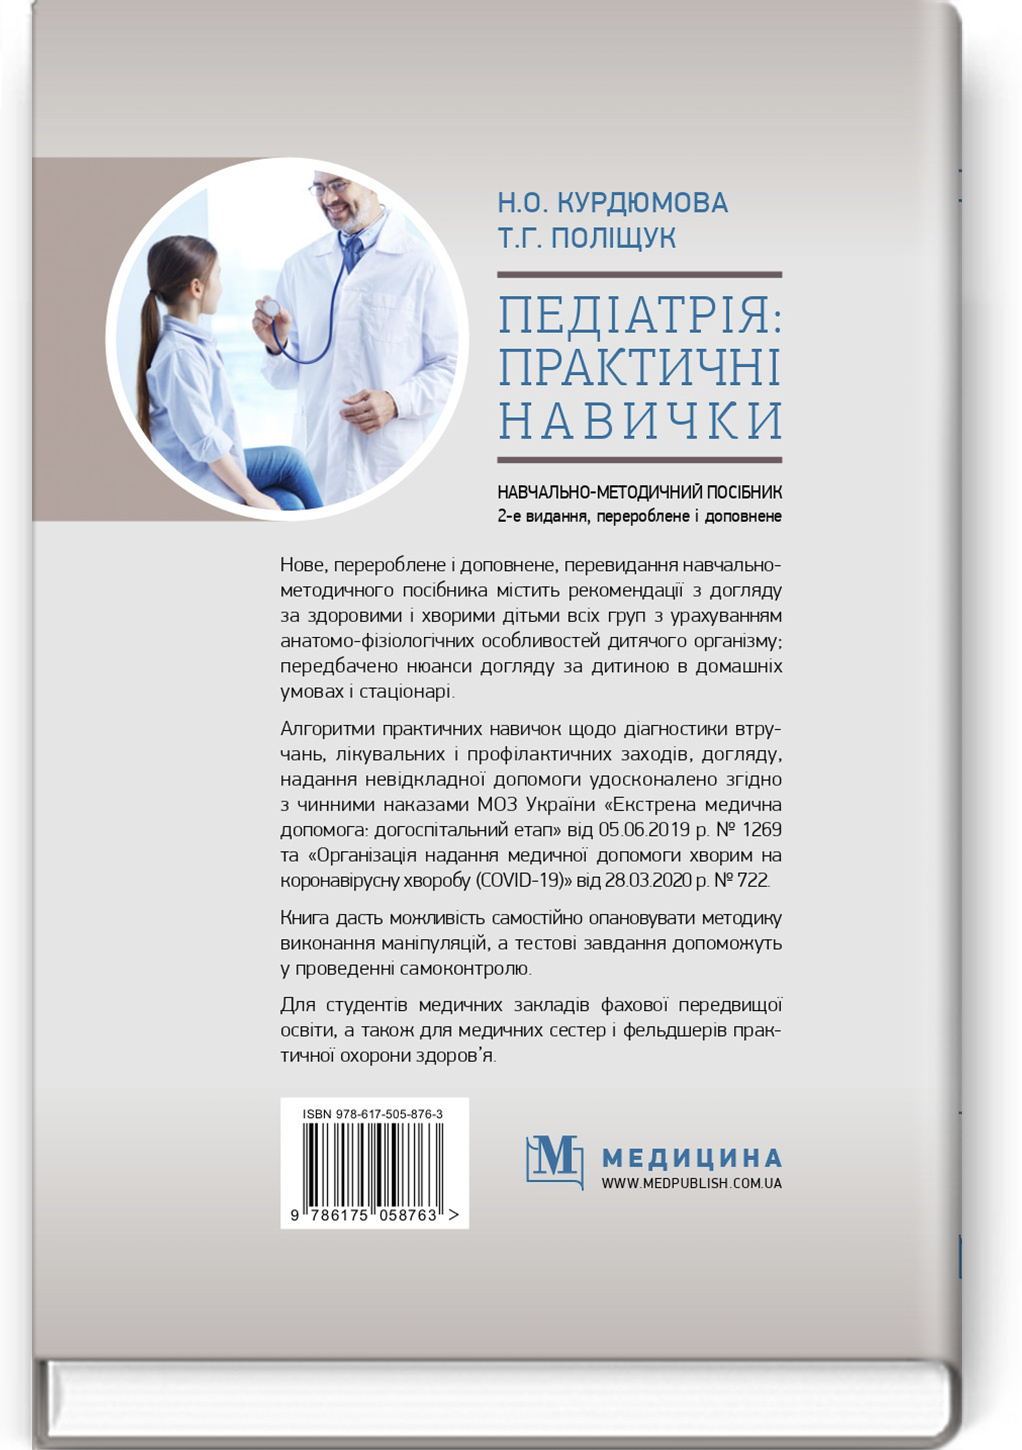 Педіатрія: практичні навички: навчально-методичний посібник. Автор — Н.О. Курдюмова. 